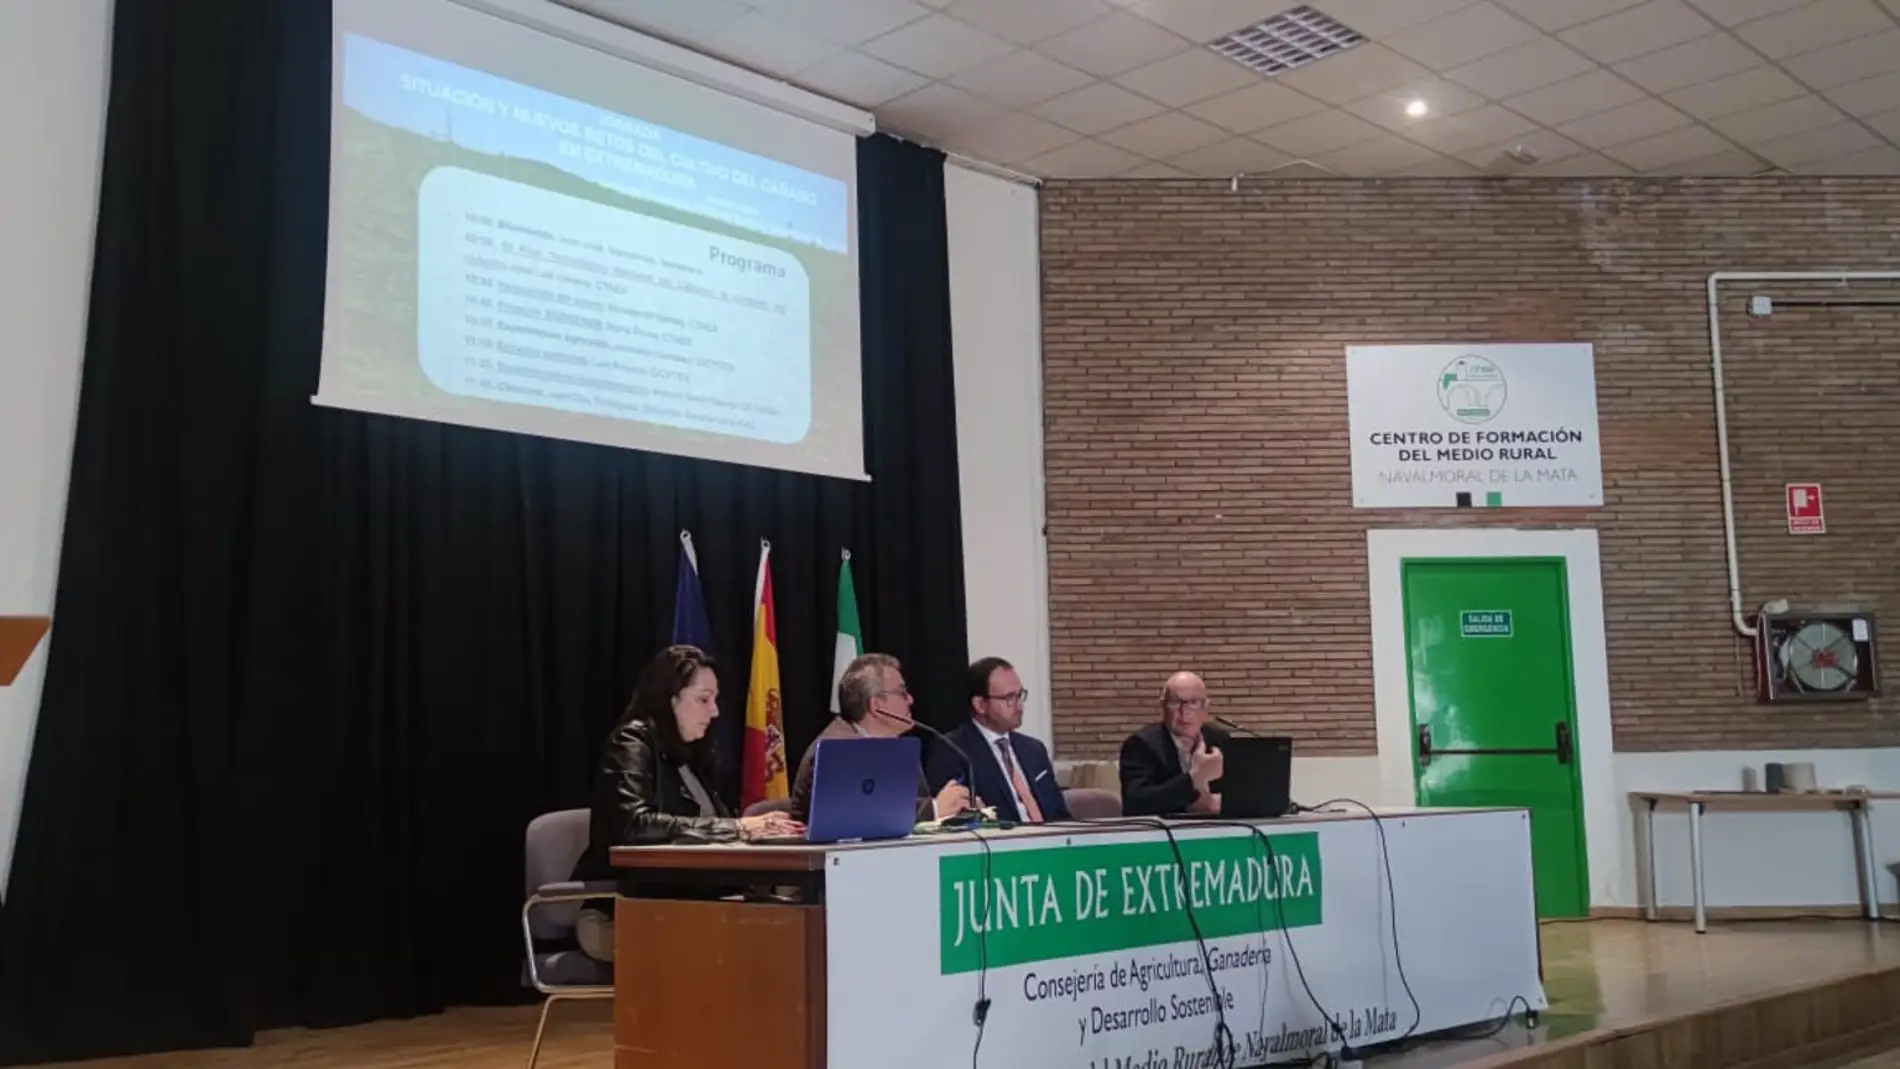 Extremadura debate sobre el cultivo del cáñamo en unas jornadas en Navalmoral de la Mata